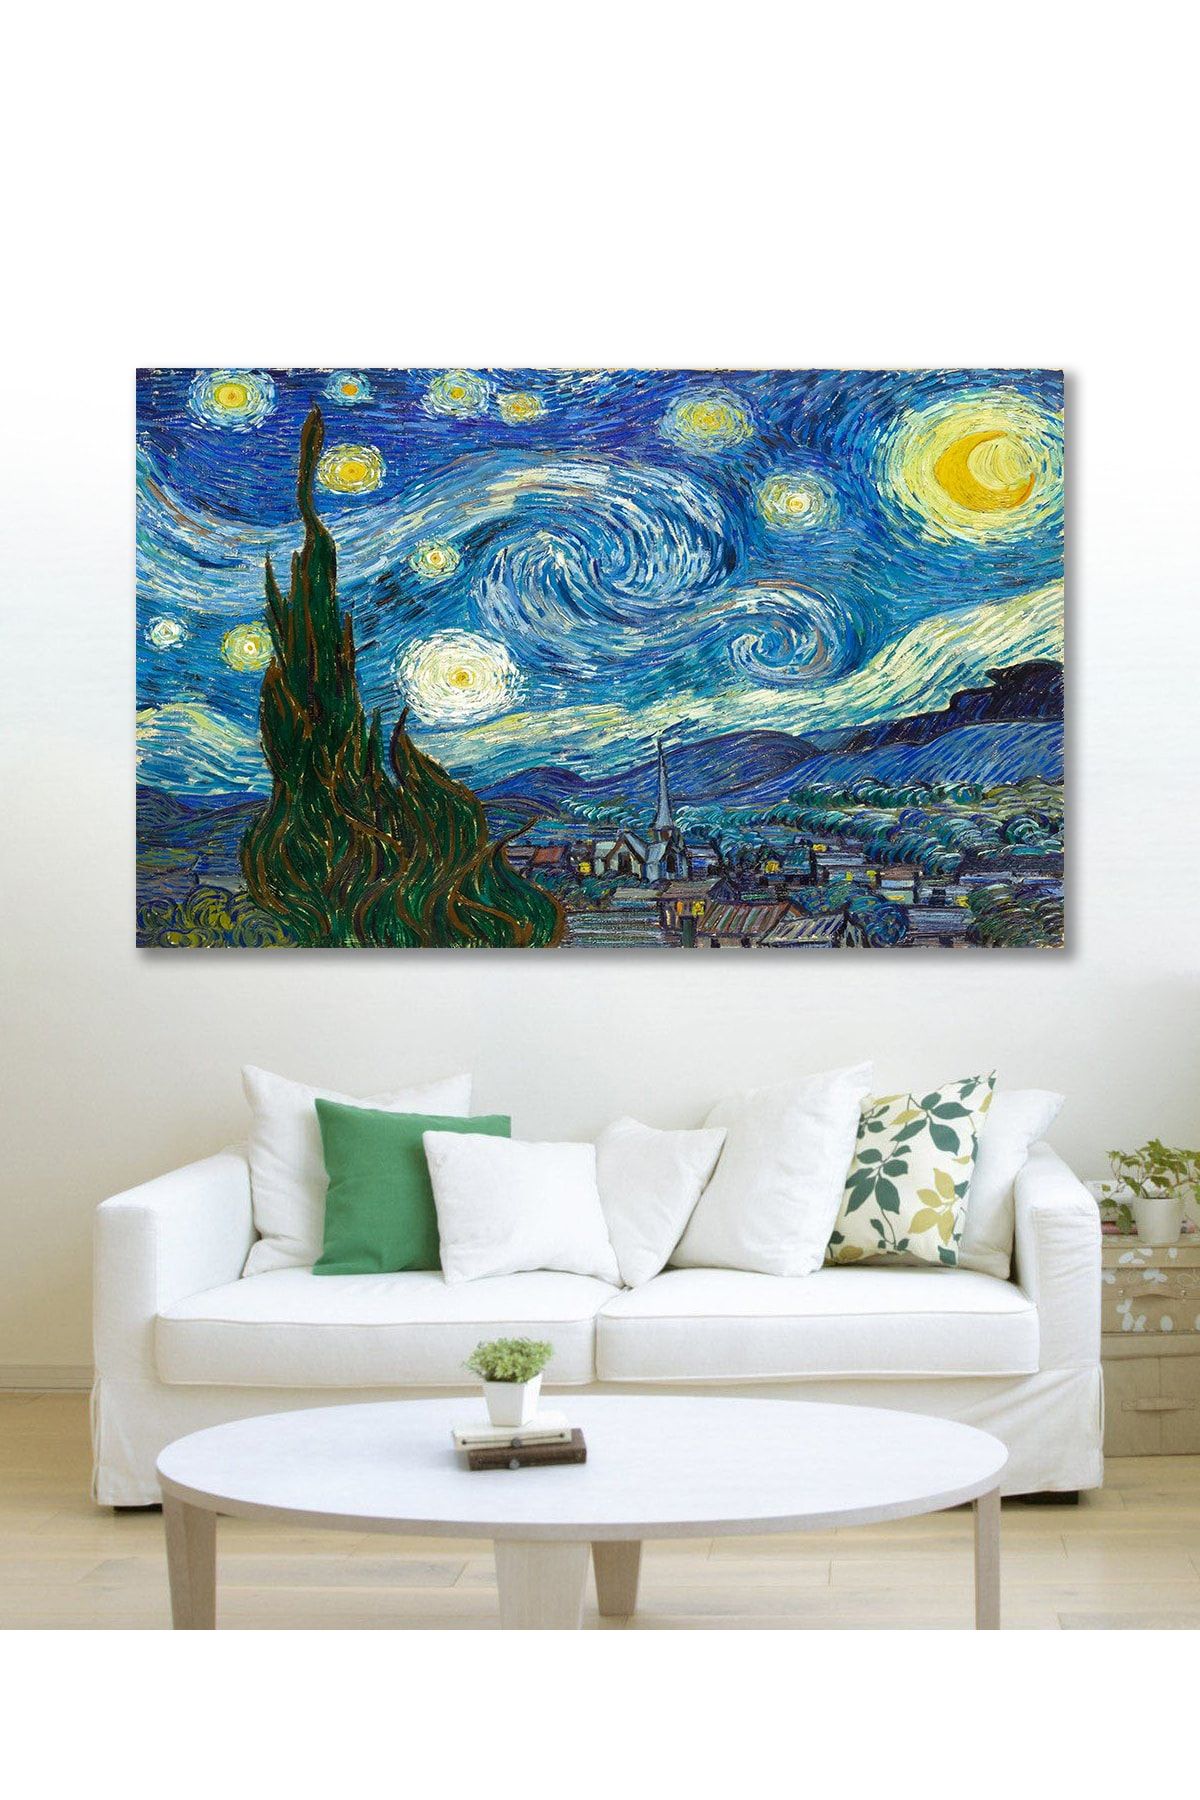 Hediyeler Kapında 50x70 Van Gogh Yıldızlı Gece Duvar Kanvas Tablo